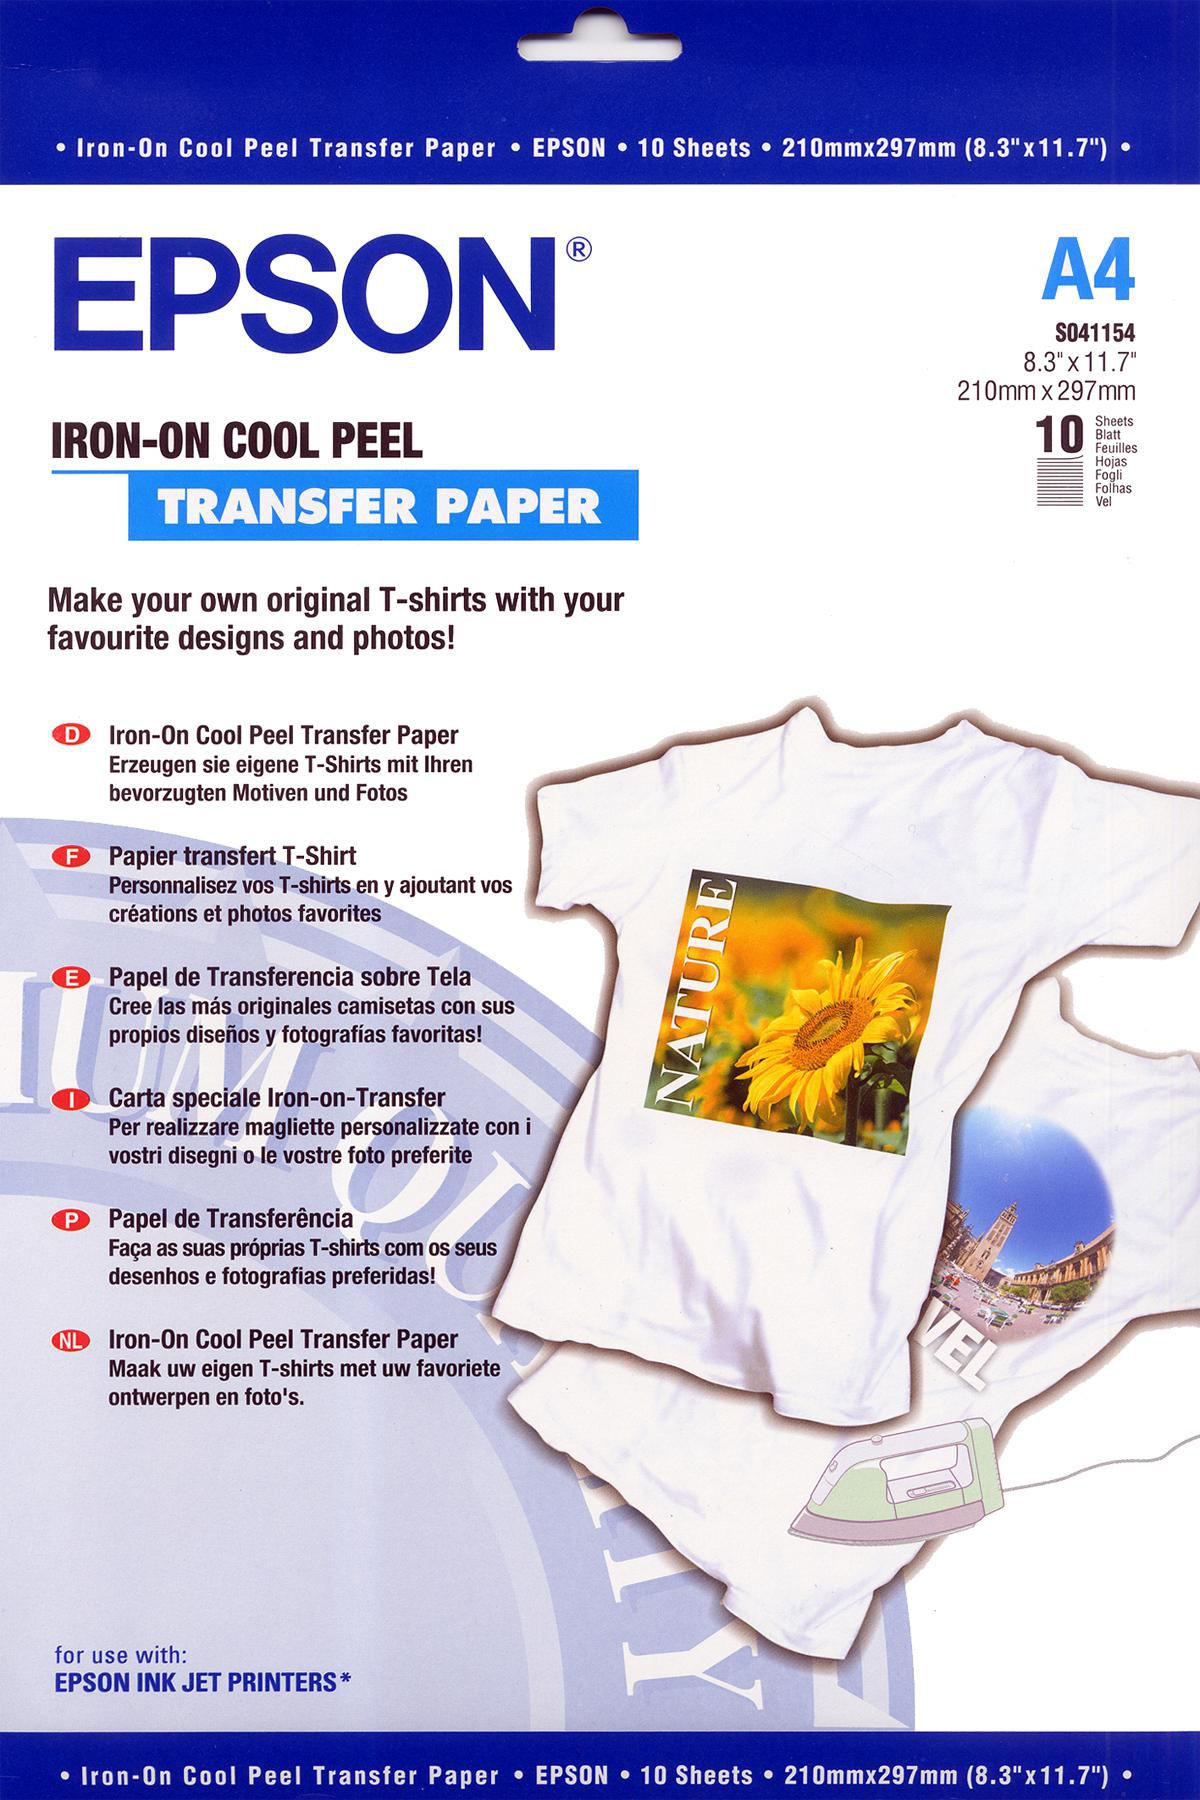 Iron-on Peel Transfer Paper. Листы. Формат: A4. Количество листов в упаковке 10. Размеры рулона/листа A4